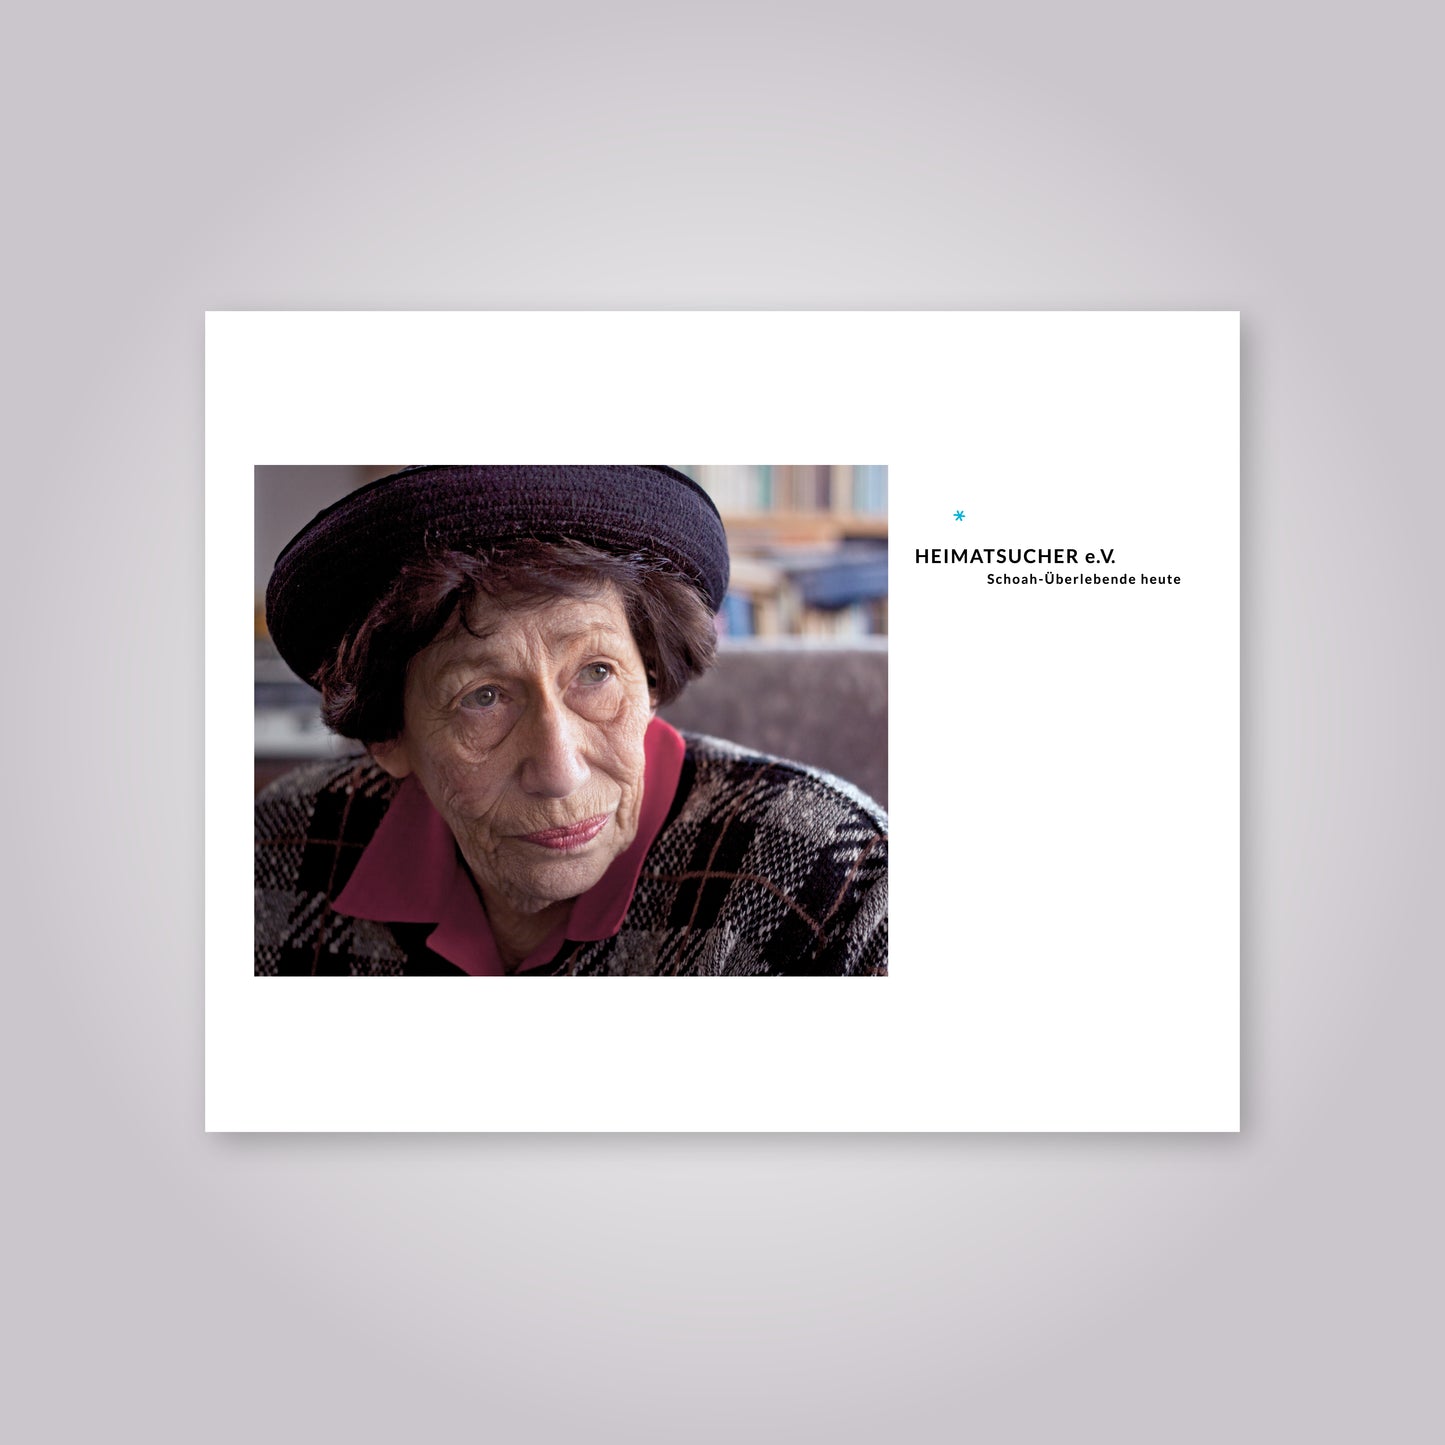 Buch-Cover: Porträt von einer alten Frau.